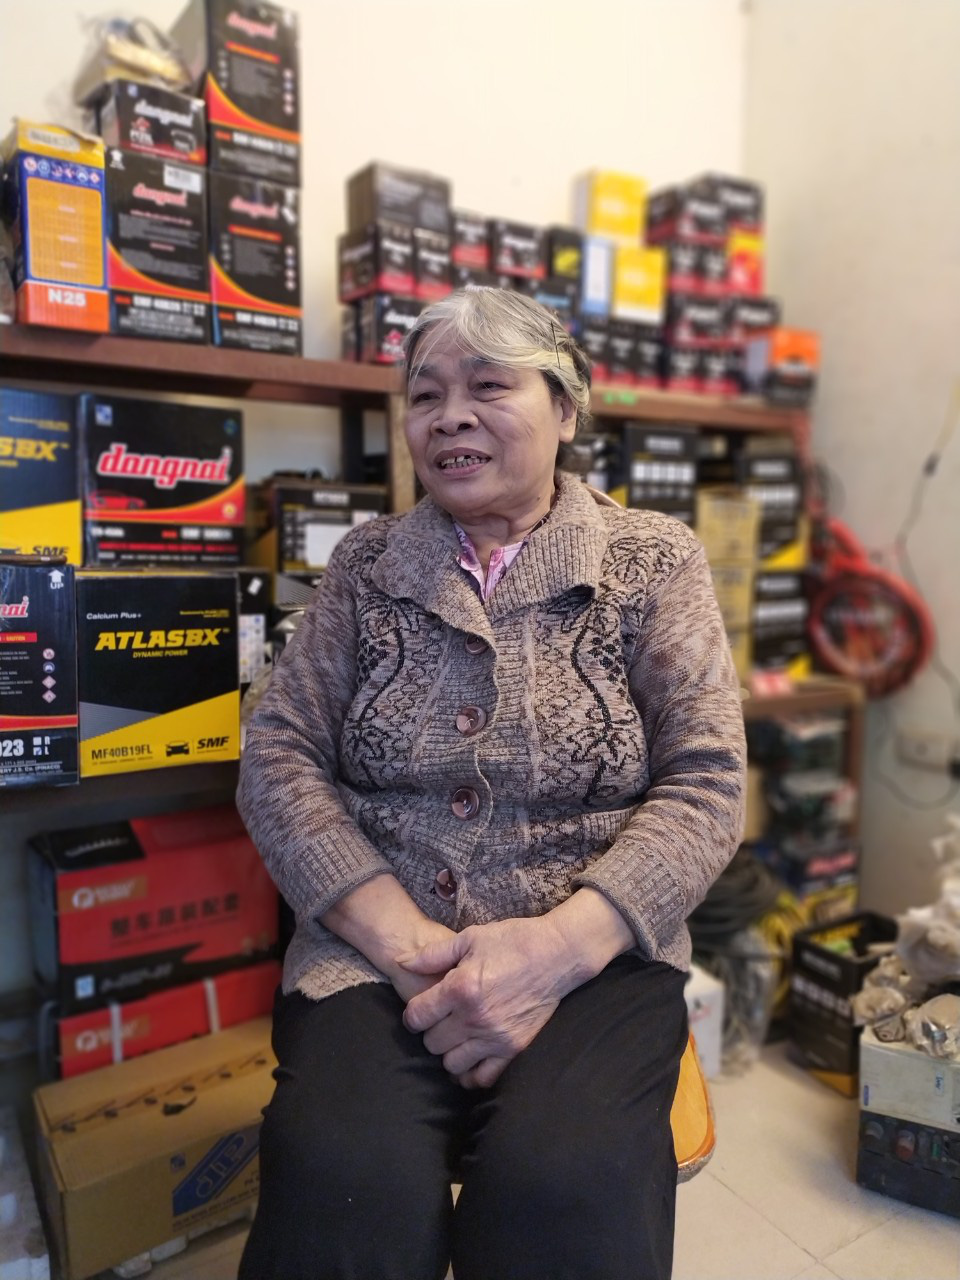 Chuyện về bà lão kỳ dị ở Hà Nội, hơn 50 năm tay cầm cờ lê, nằm gầm ô tô - Ảnh 4.